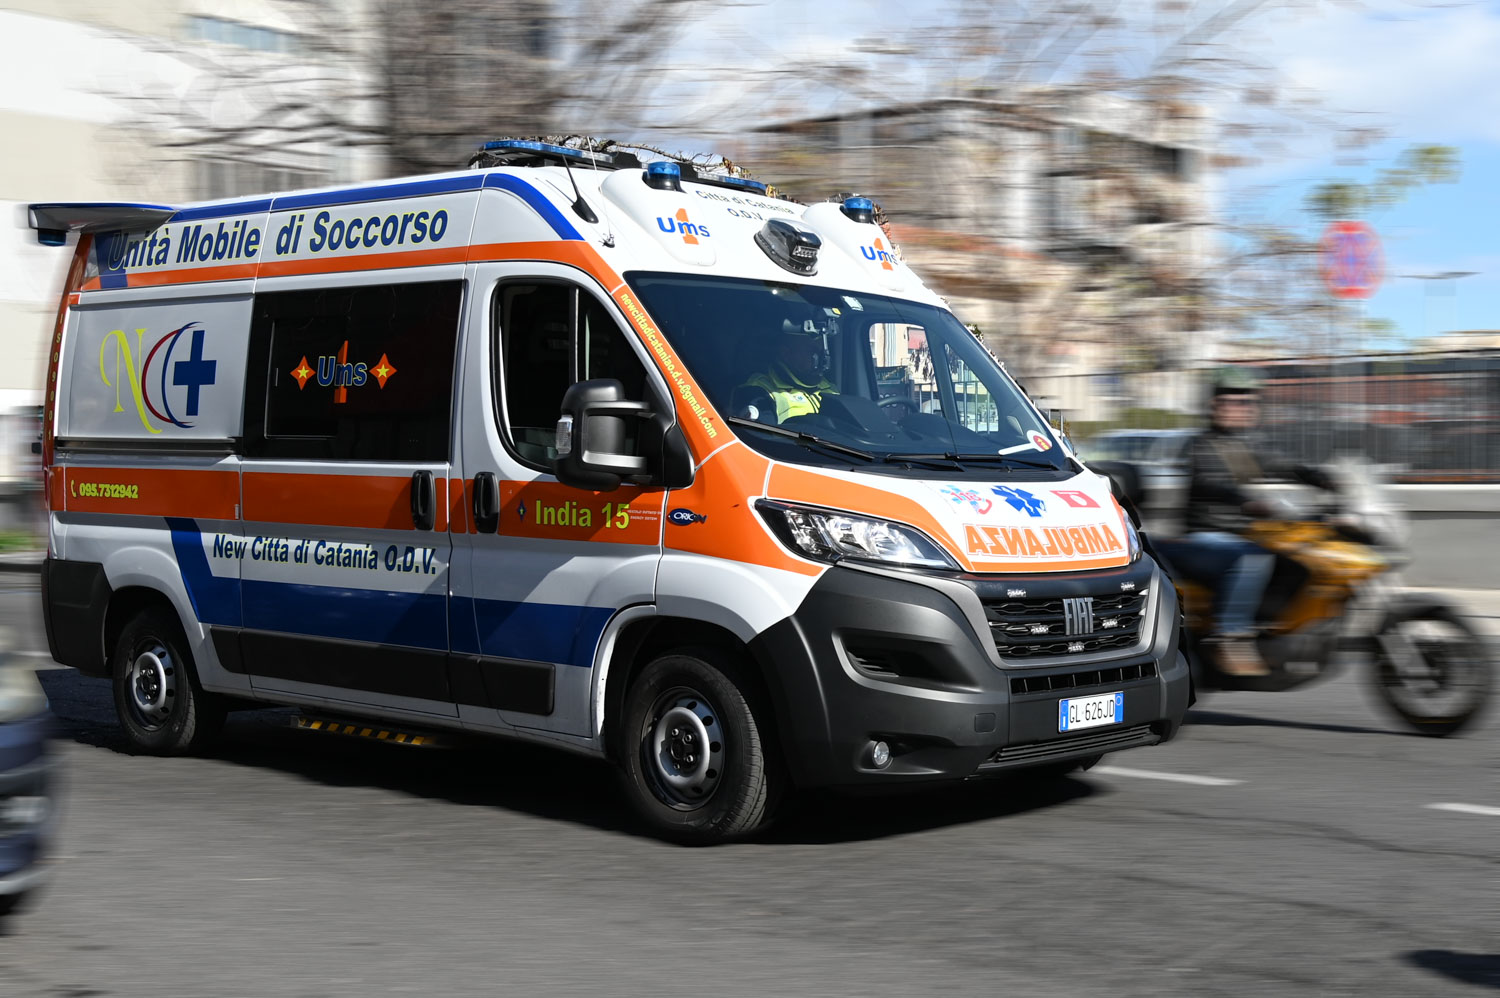 Camionista catanese muore per un incidente sul lavoro, chi è la vittima